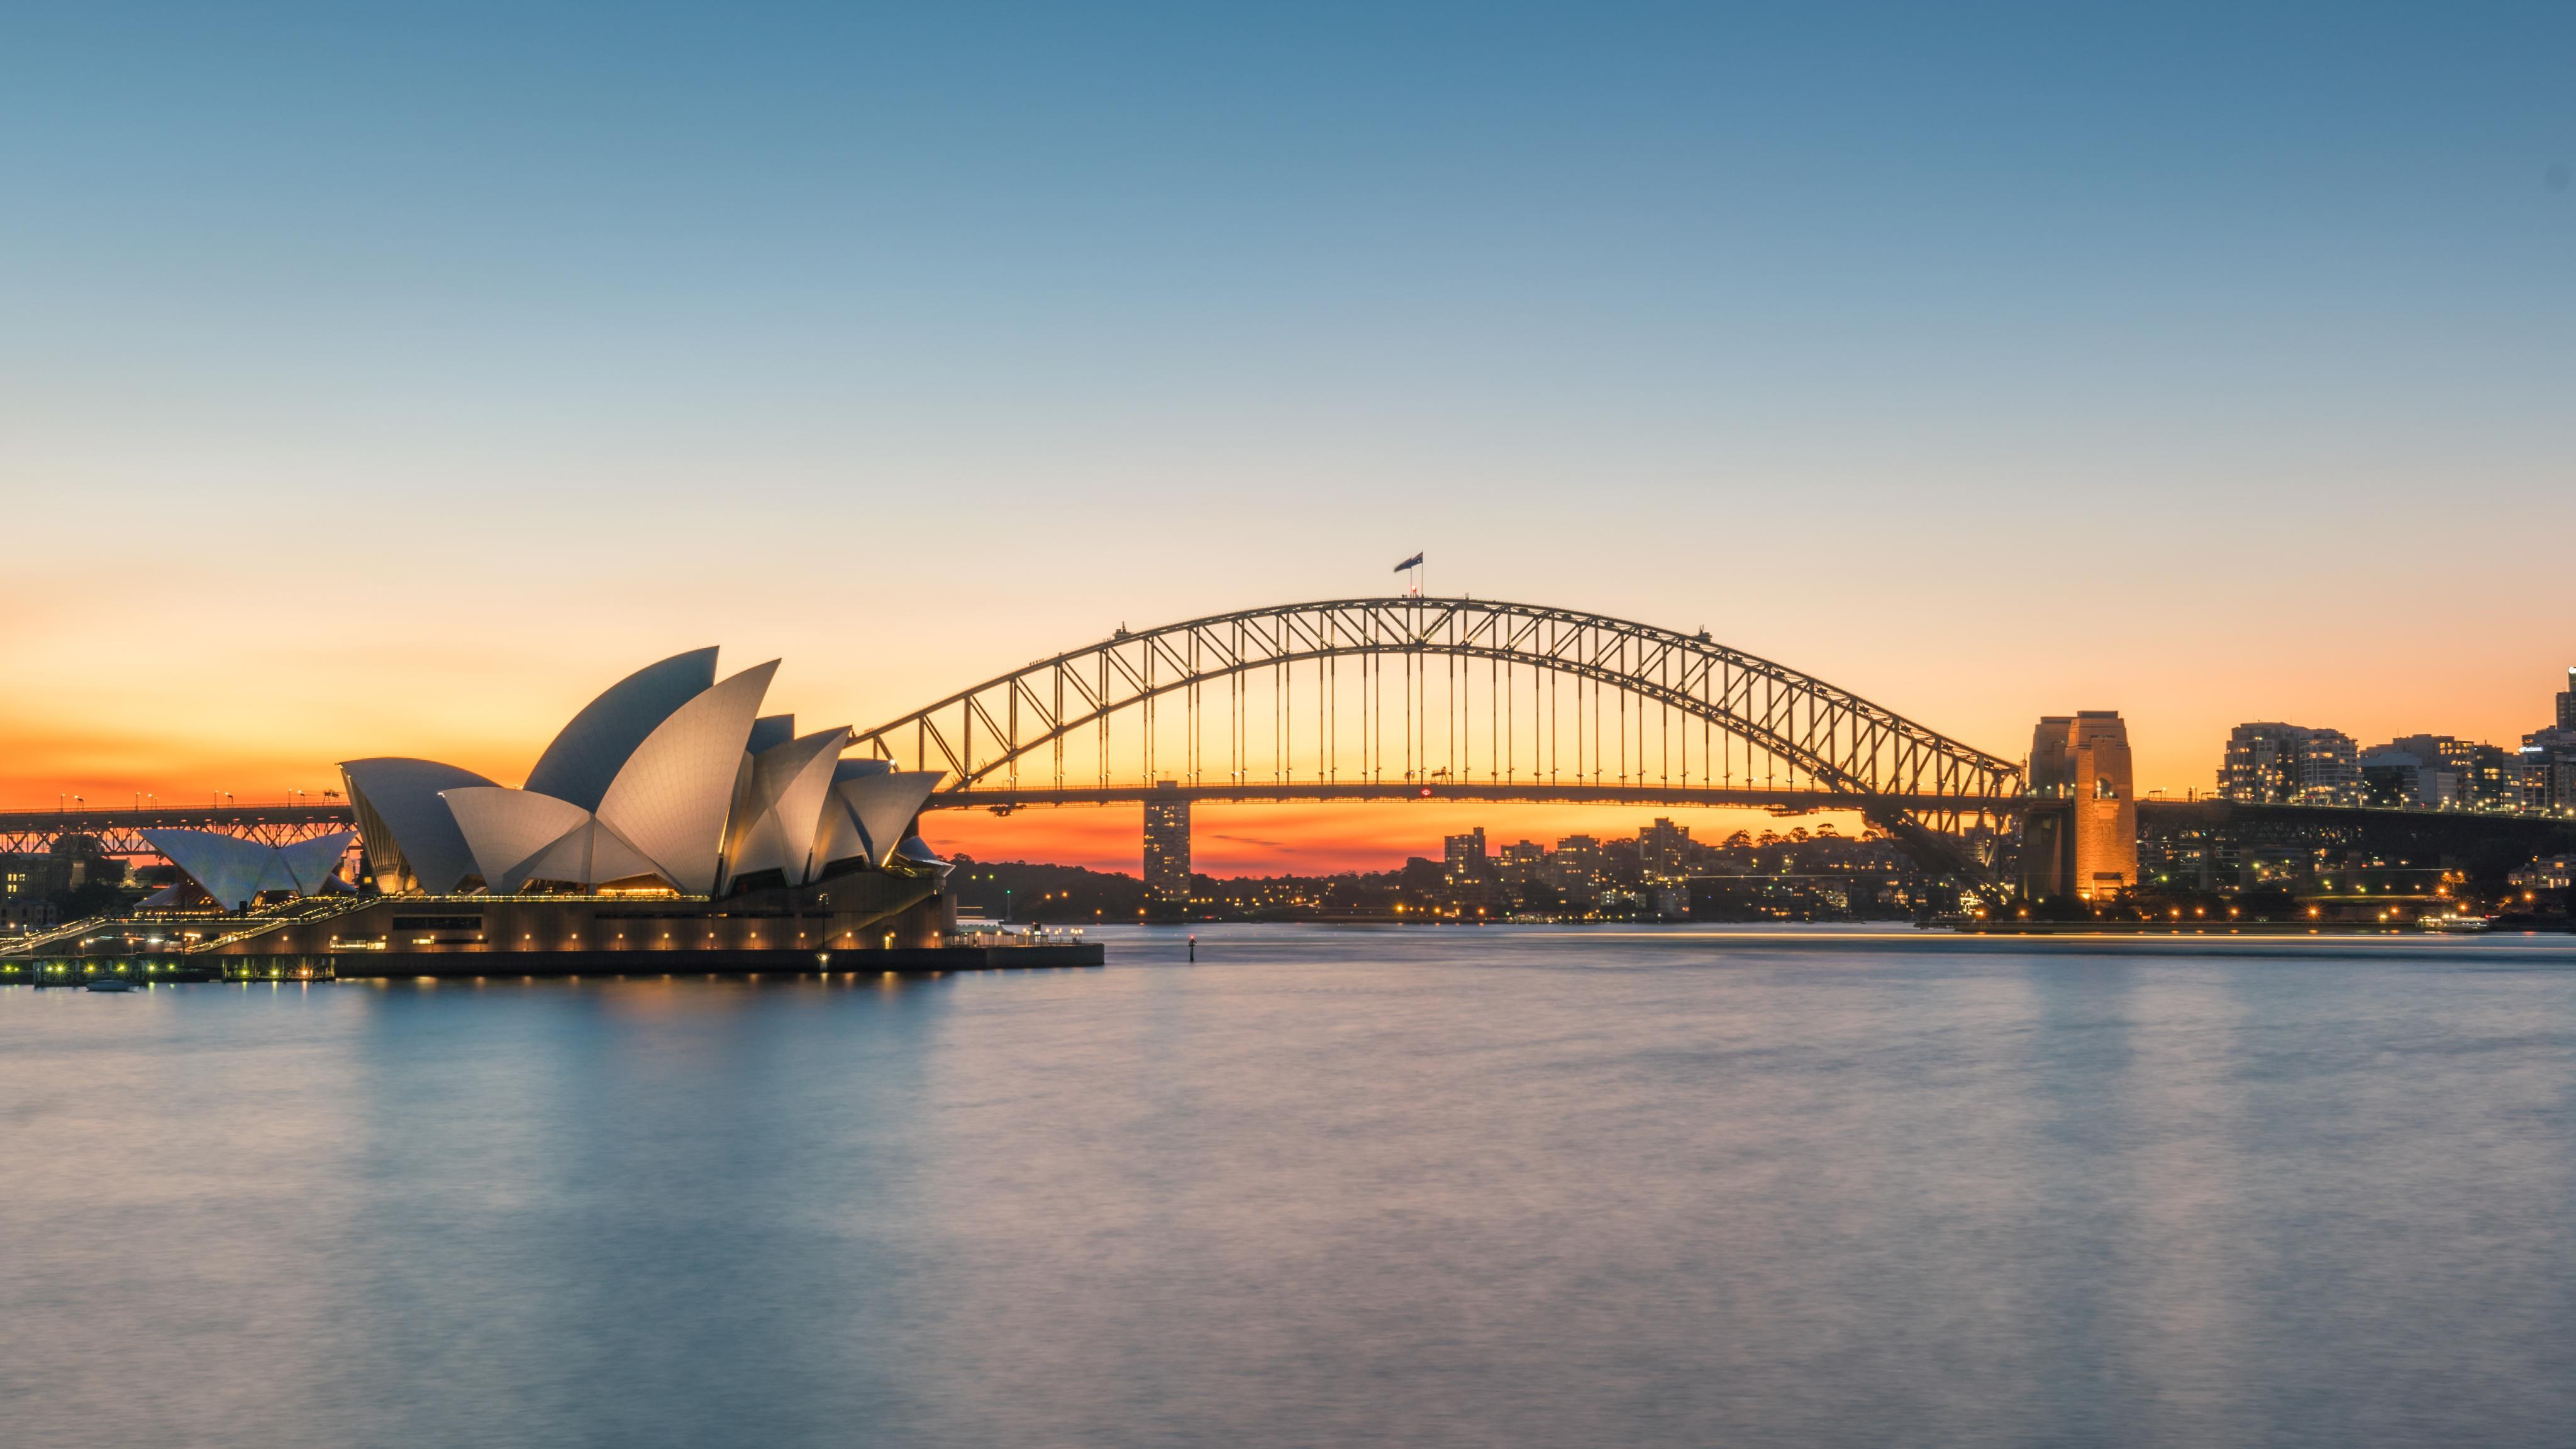 海港大桥和悉尼歌剧院 sydney harbor bridge & opera house